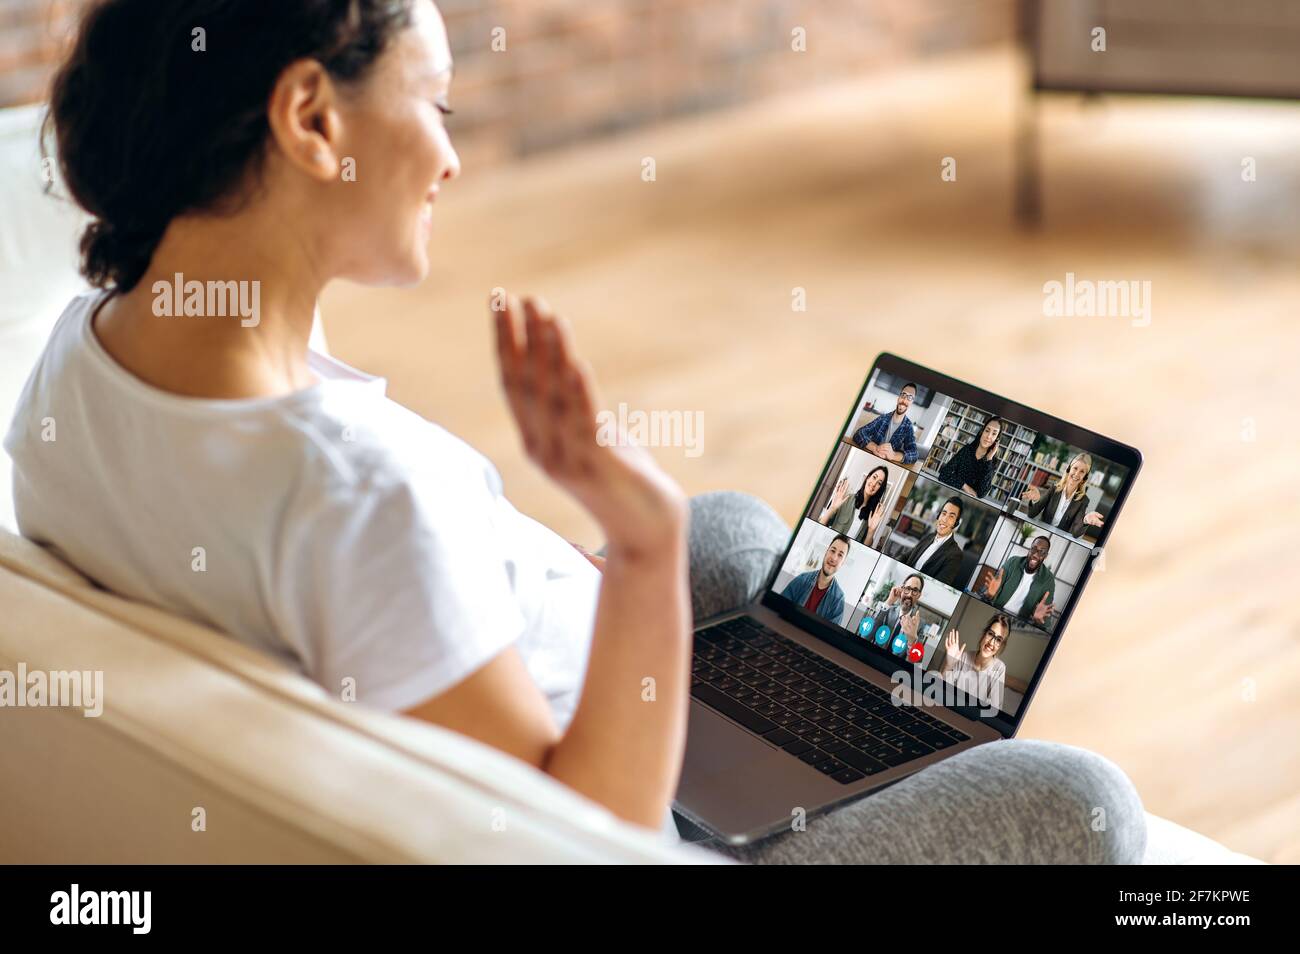 Lavoro remoto, comunicazione online. Una donna incinta usa un computer portatile, comunica con i colleghi tramite videochiamata mentre si siede a casa sul divano, saluta gli interlocutori con un gesto della mano, sorride Foto Stock